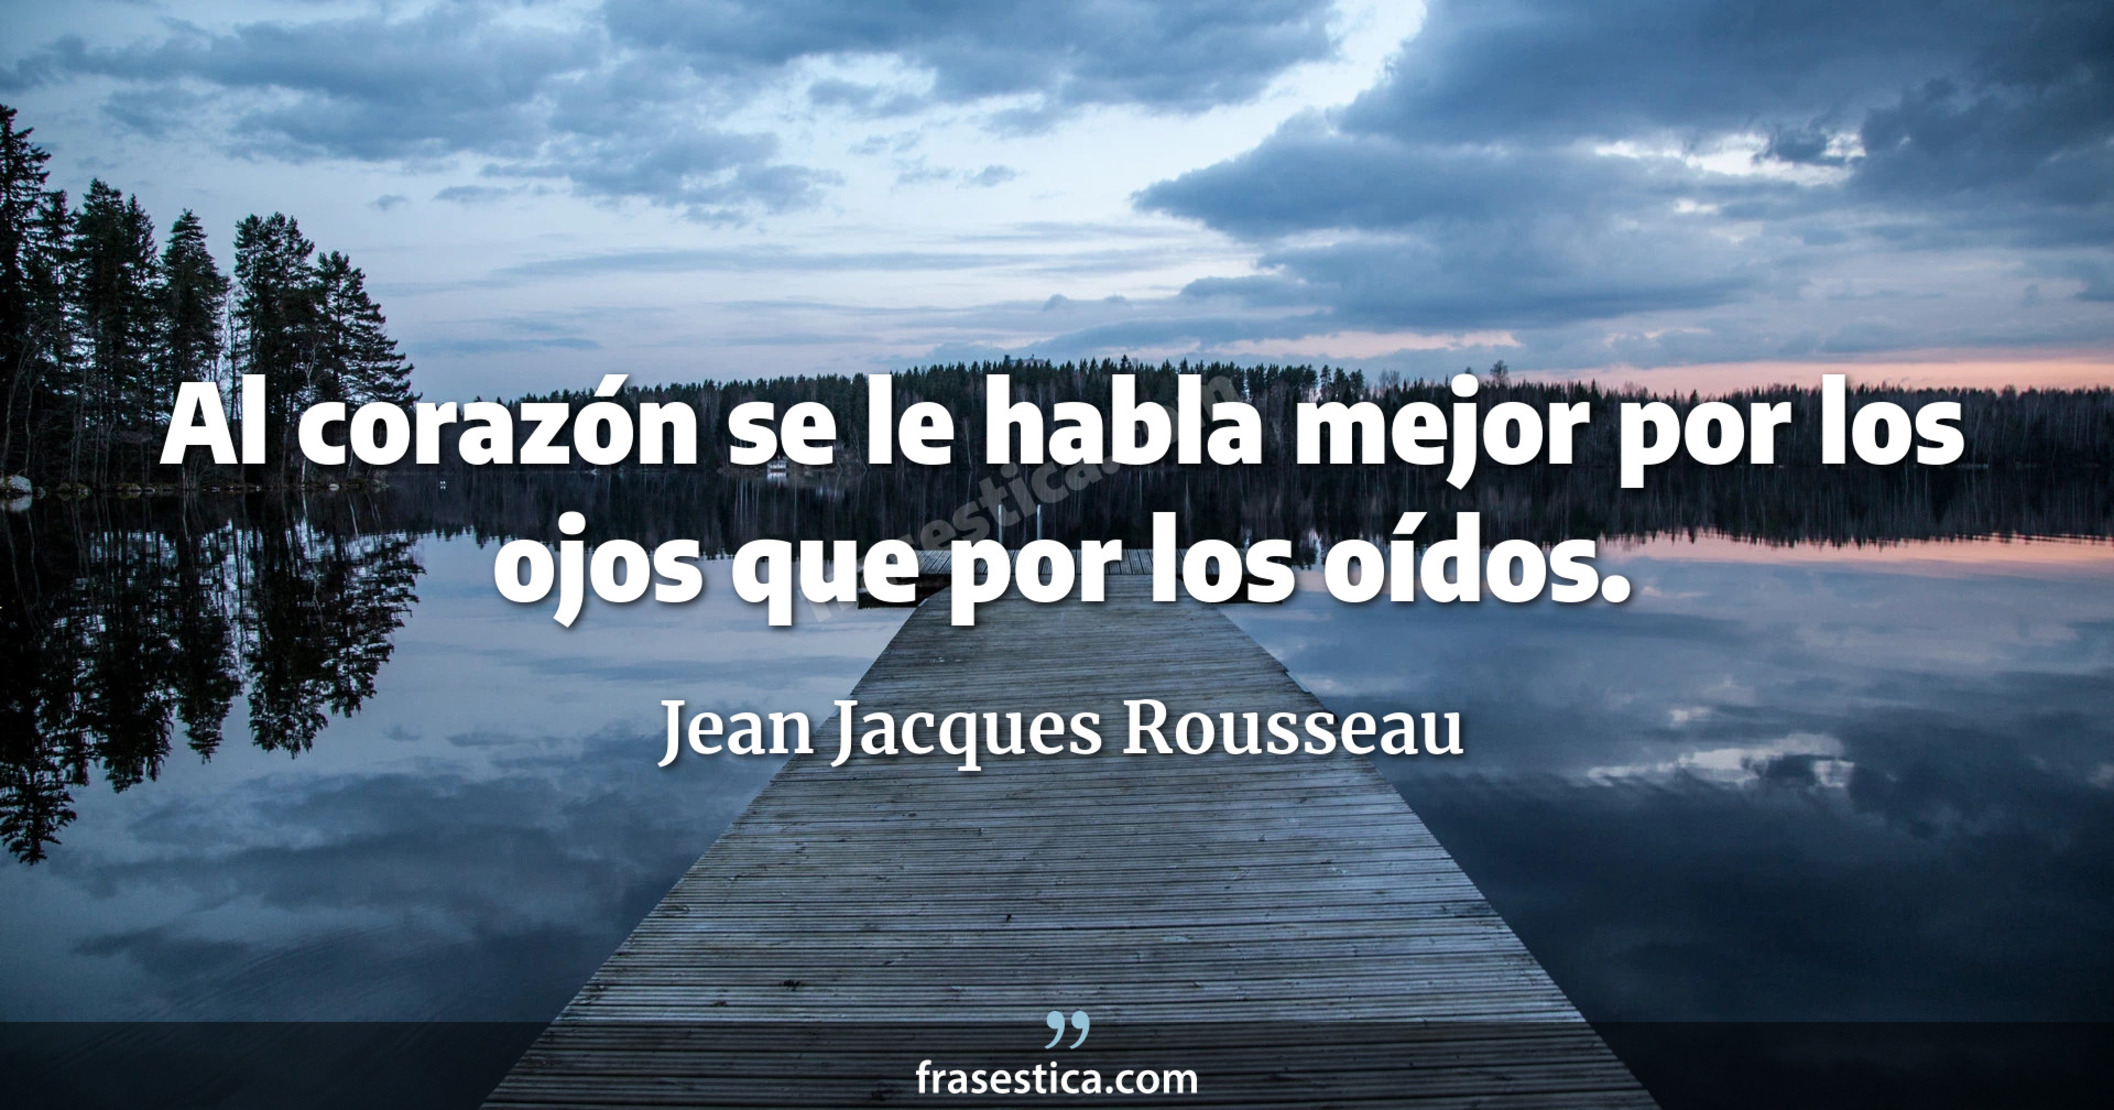 Al corazón se le habla mejor por los ojos que por los oídos. - Jean Jacques Rousseau